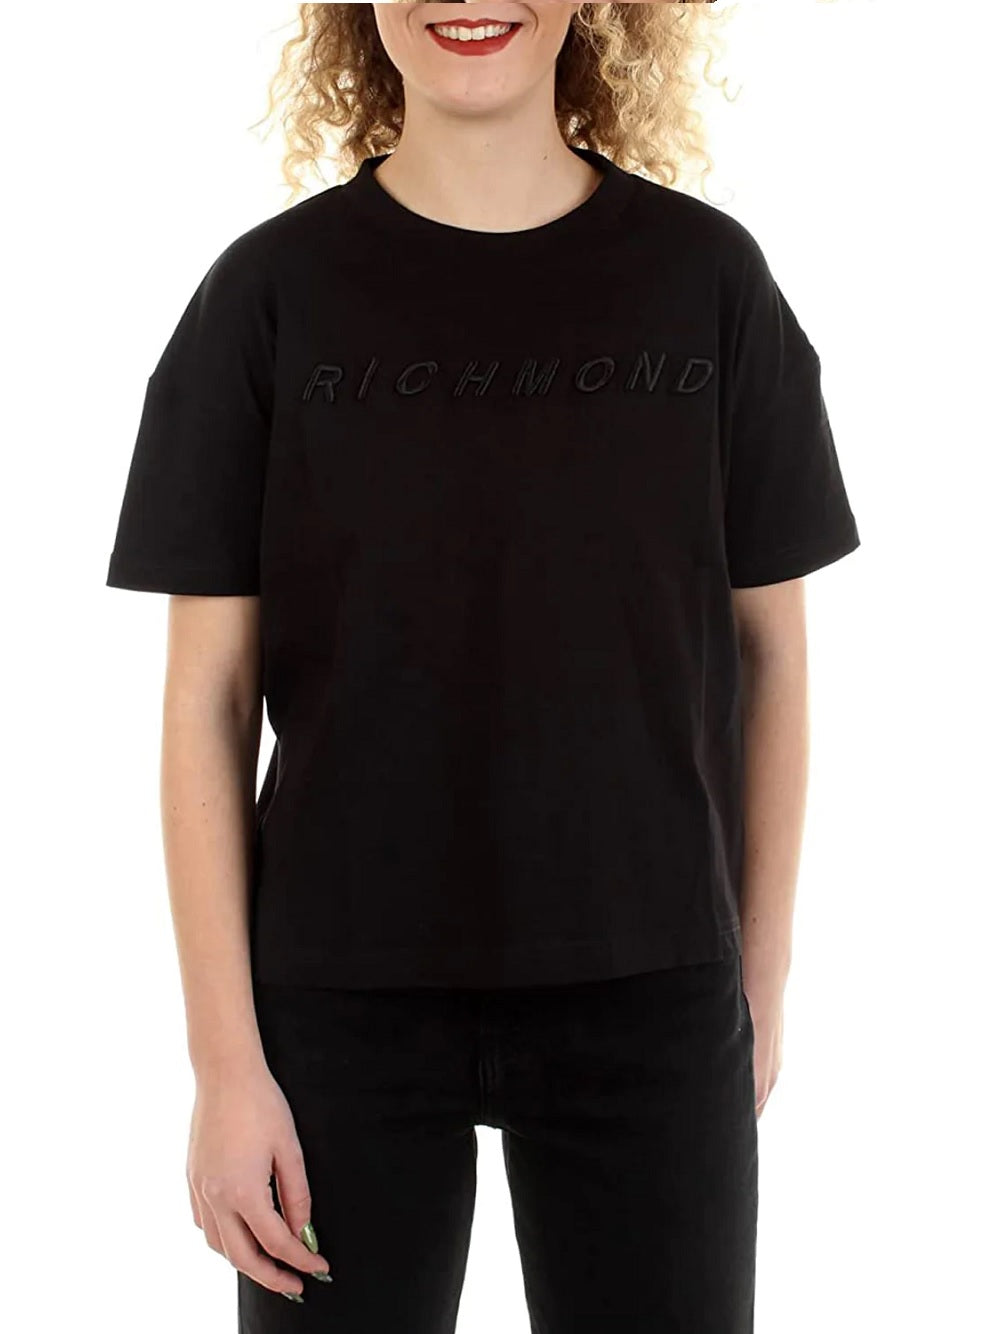 T-shirt John Richmond modello UWP22085TS con logo lettering ricamato sul davanti tono su tono